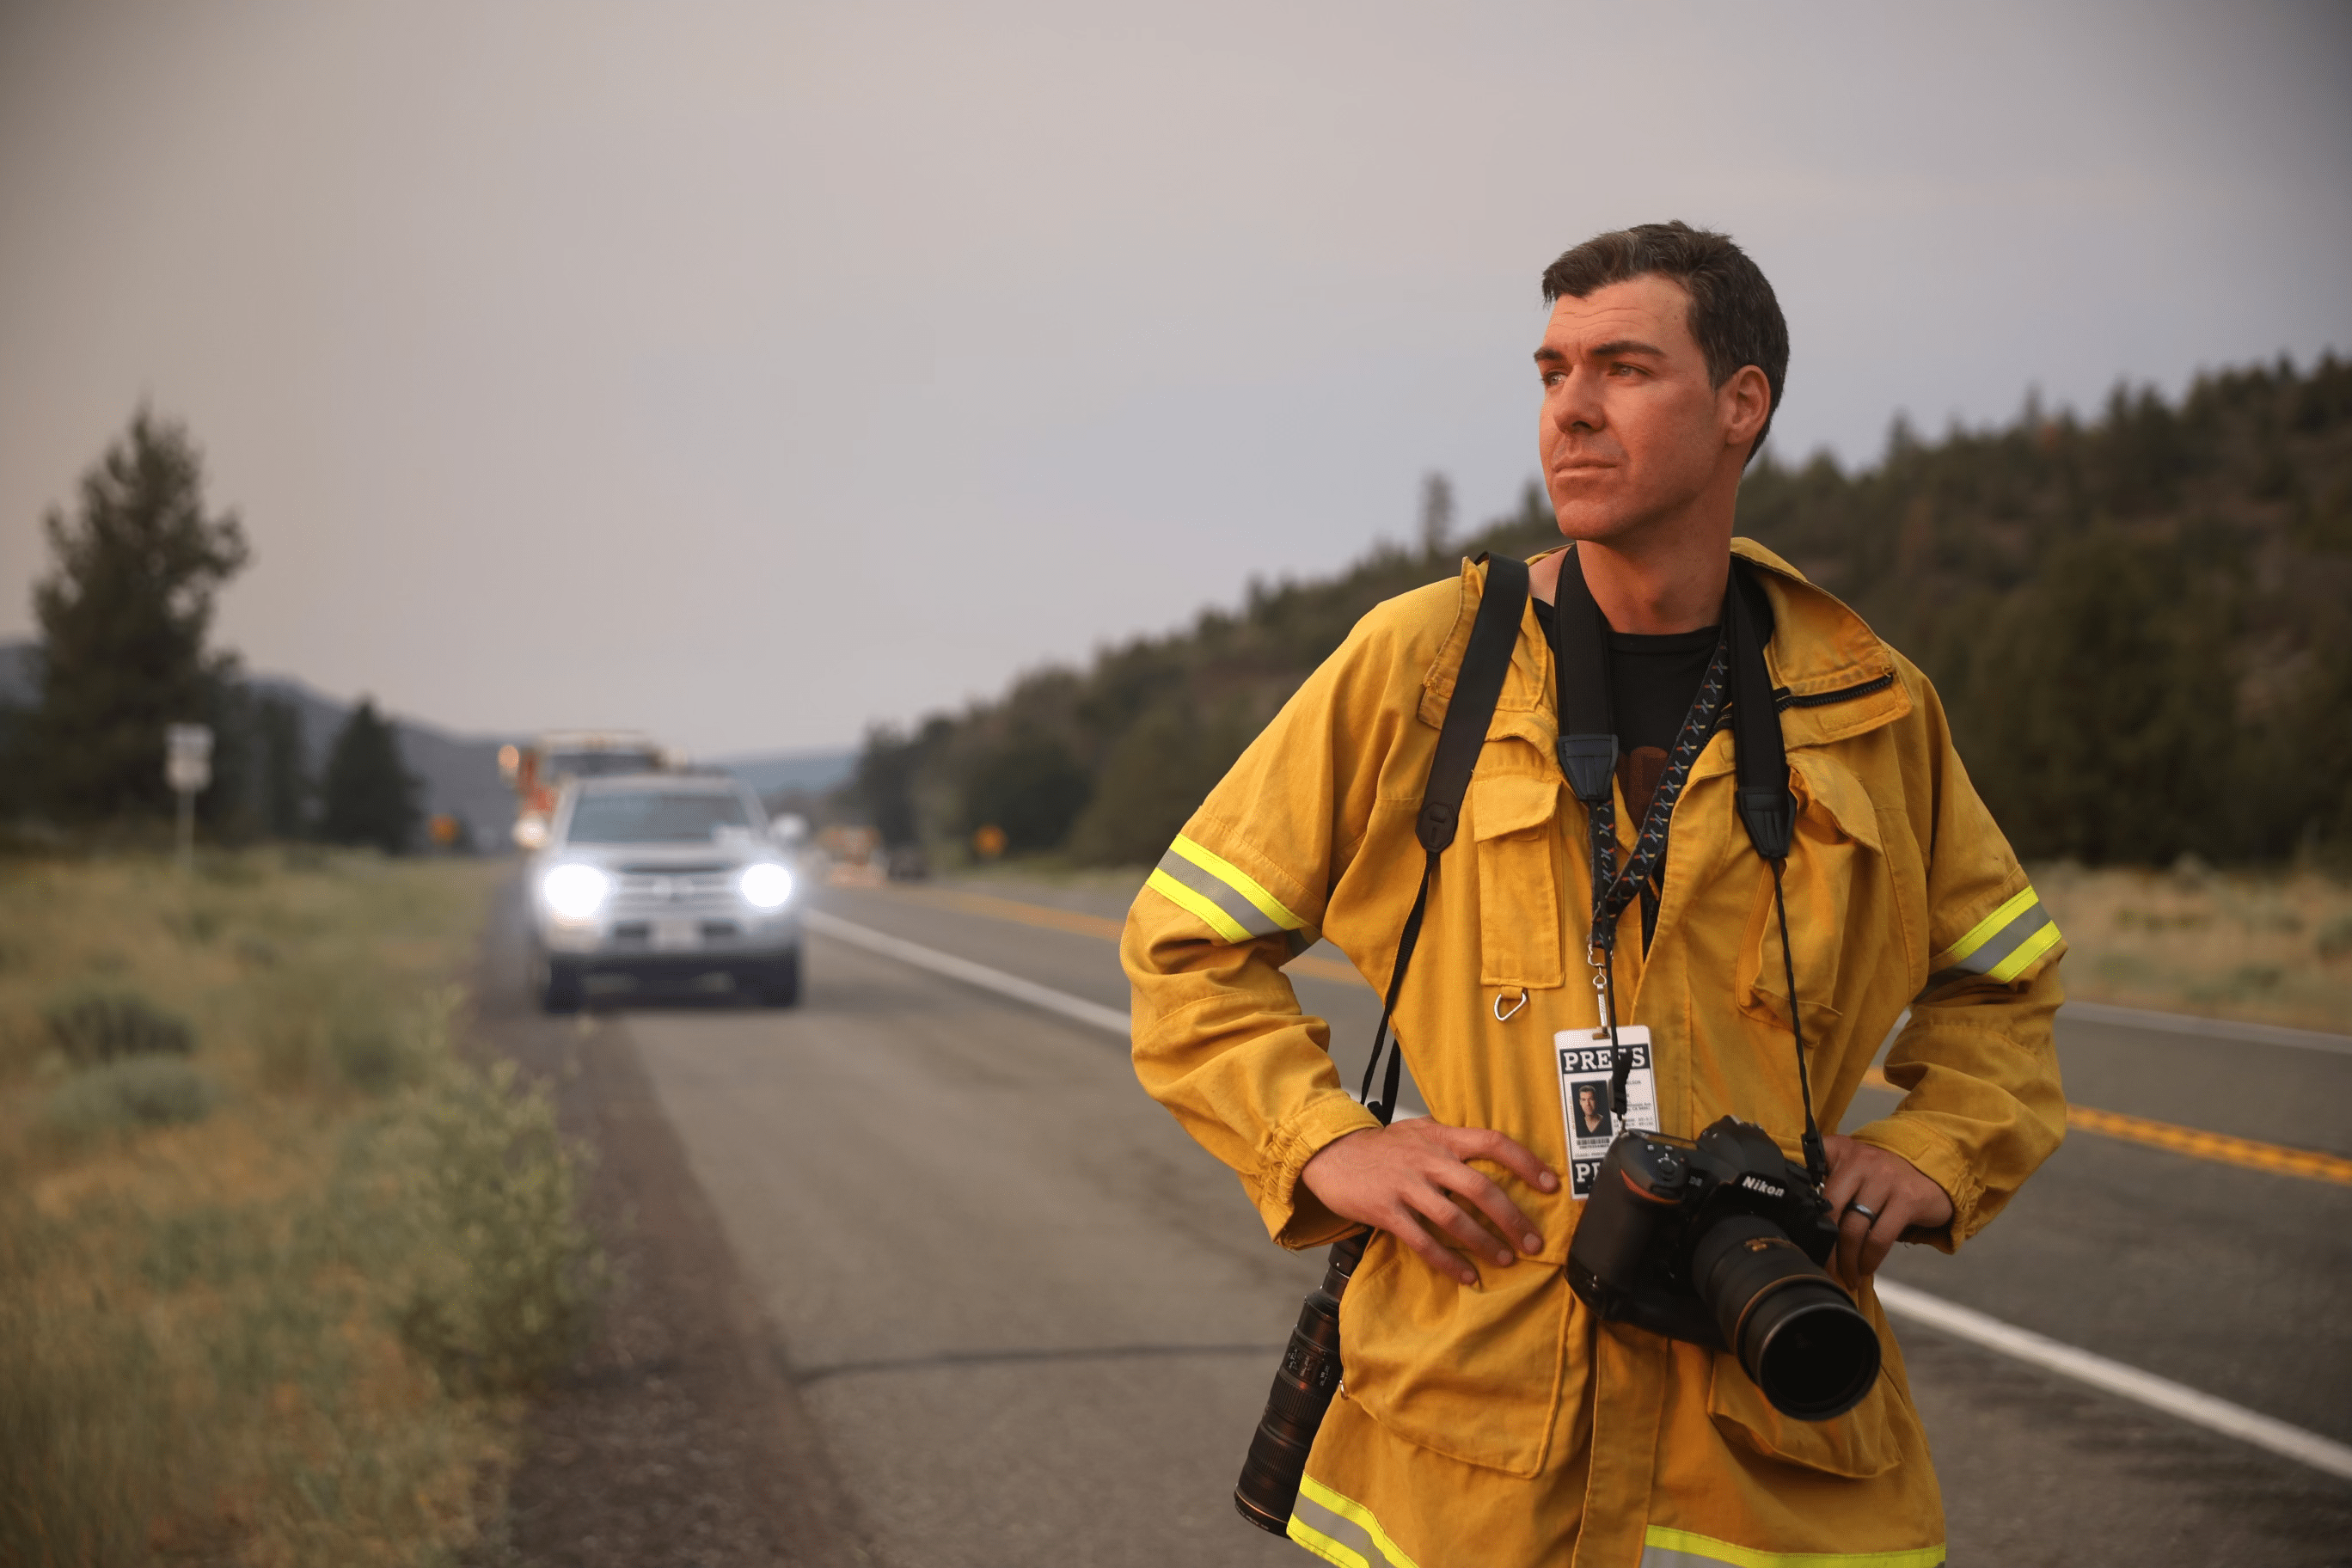 El fotógrafo Josh Edelson observa el paisaje mientras está de pie en la carretera con una cámara y un distintivo de prensa en el cuello.